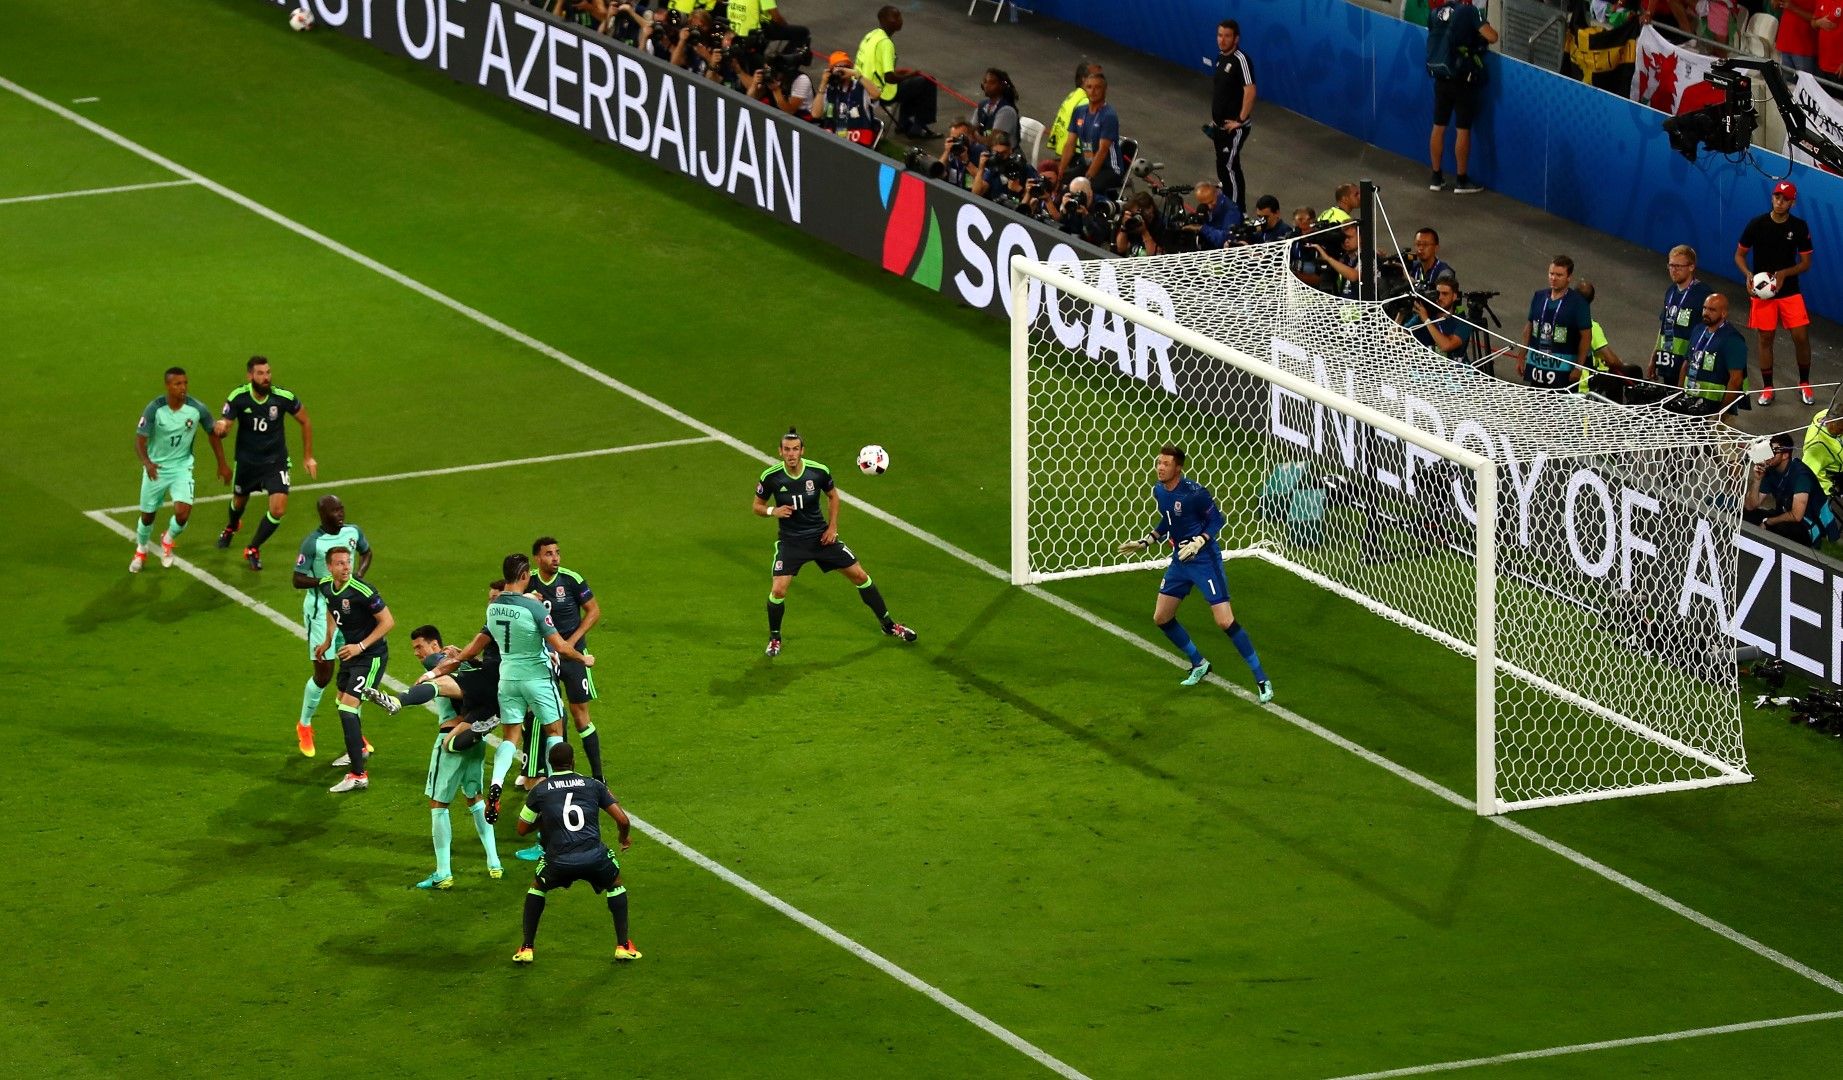 Роналдо бележи срещу Уелс в полуфинала на Евро 2016. Рекламните пана отзад са интересни... Генерален спонсор на първенството бе... реално държавата Азербайджан